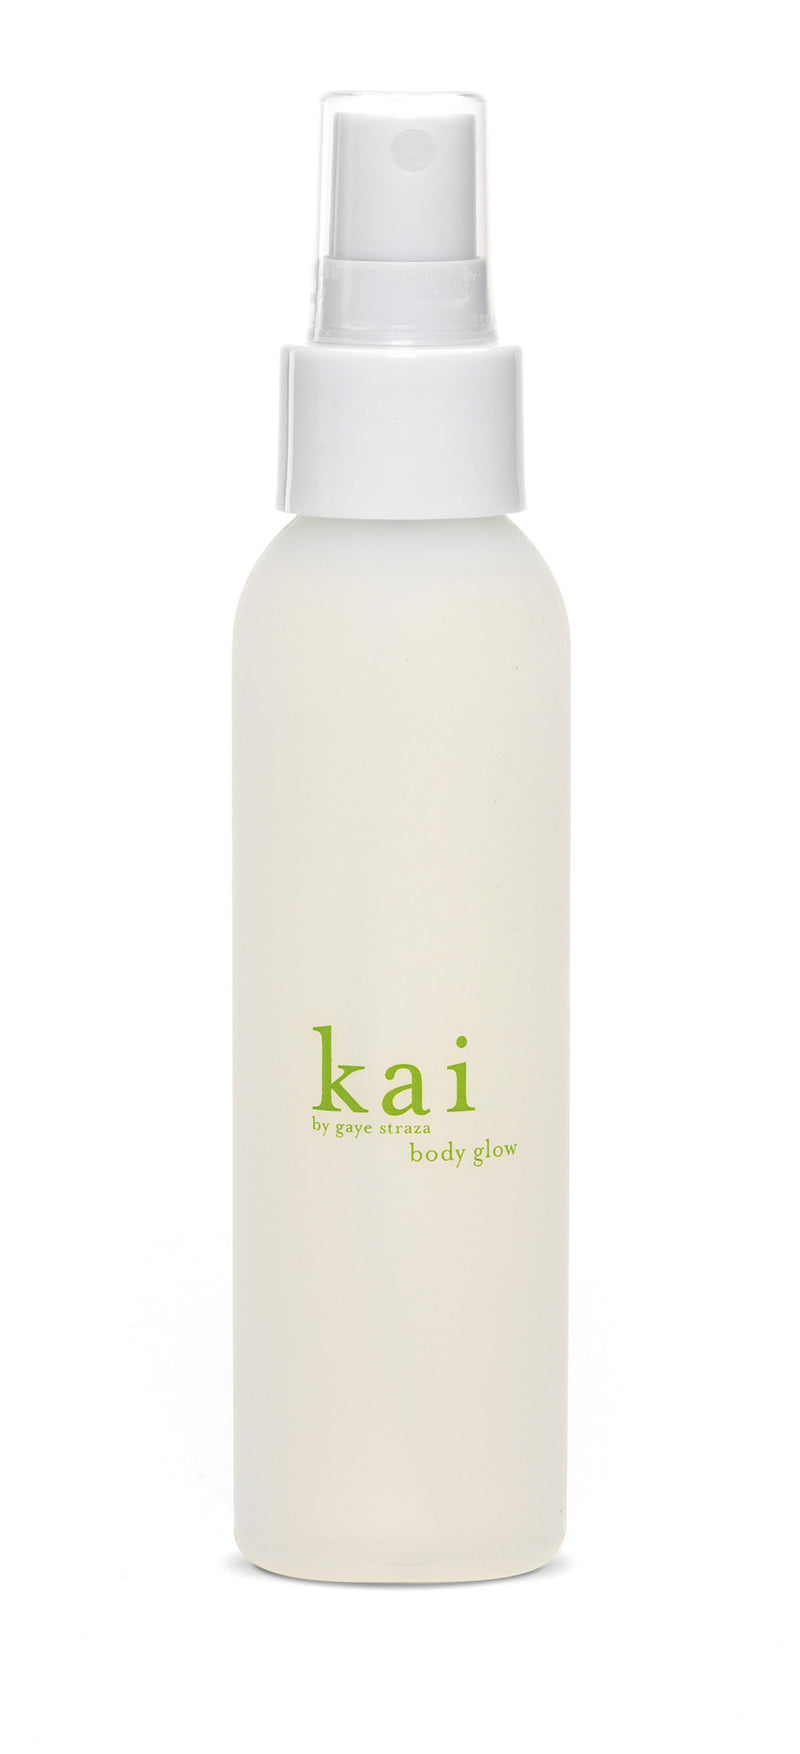 media image for kai body glow design by kai fragrance 1 220